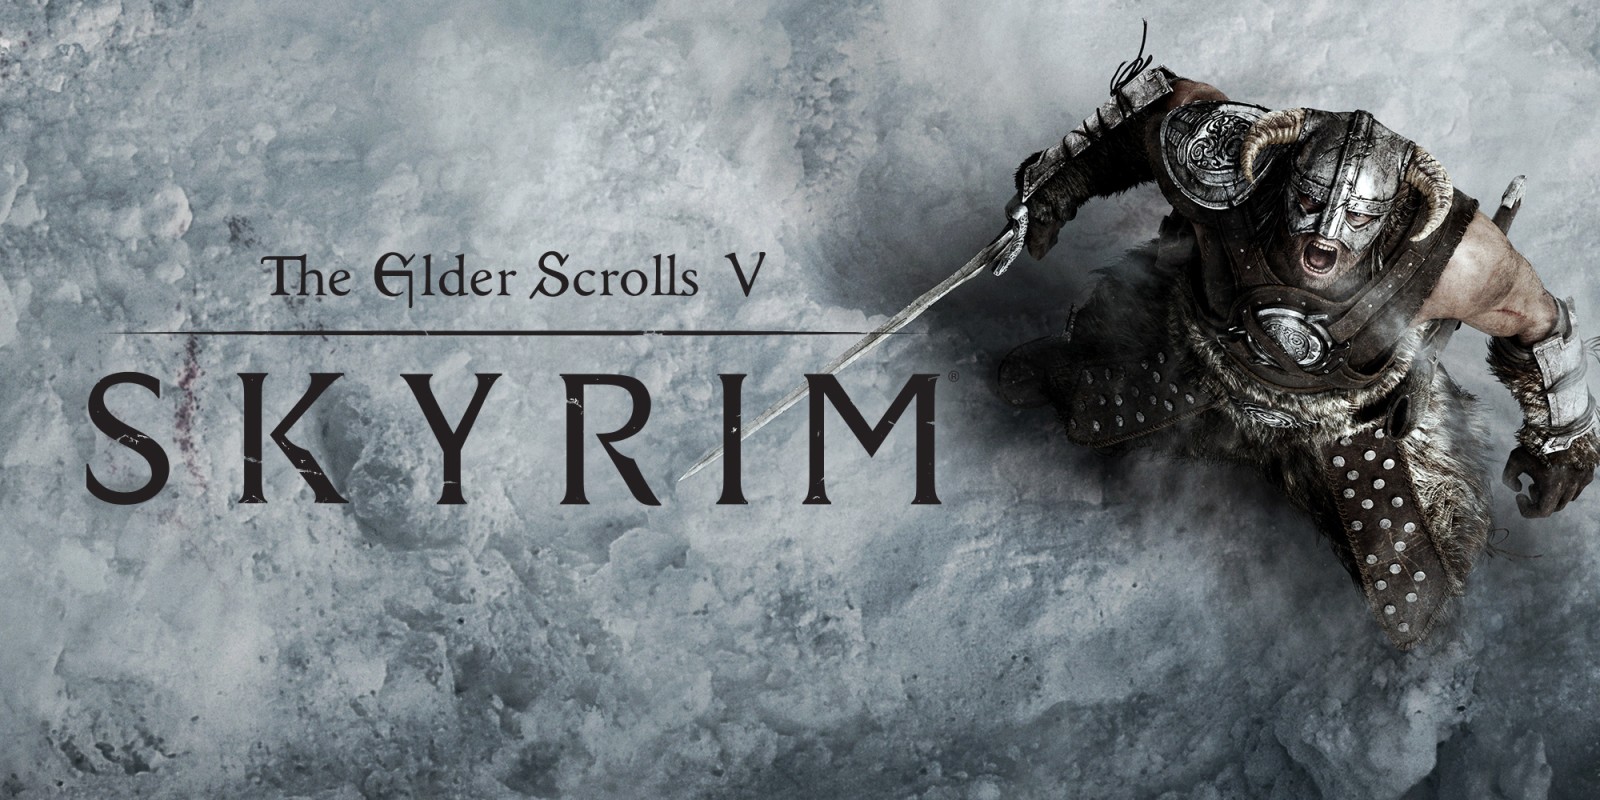 دانلود بازی The Elder Scrolls V: Skyrim نسخه فشرده با حجم 3.76